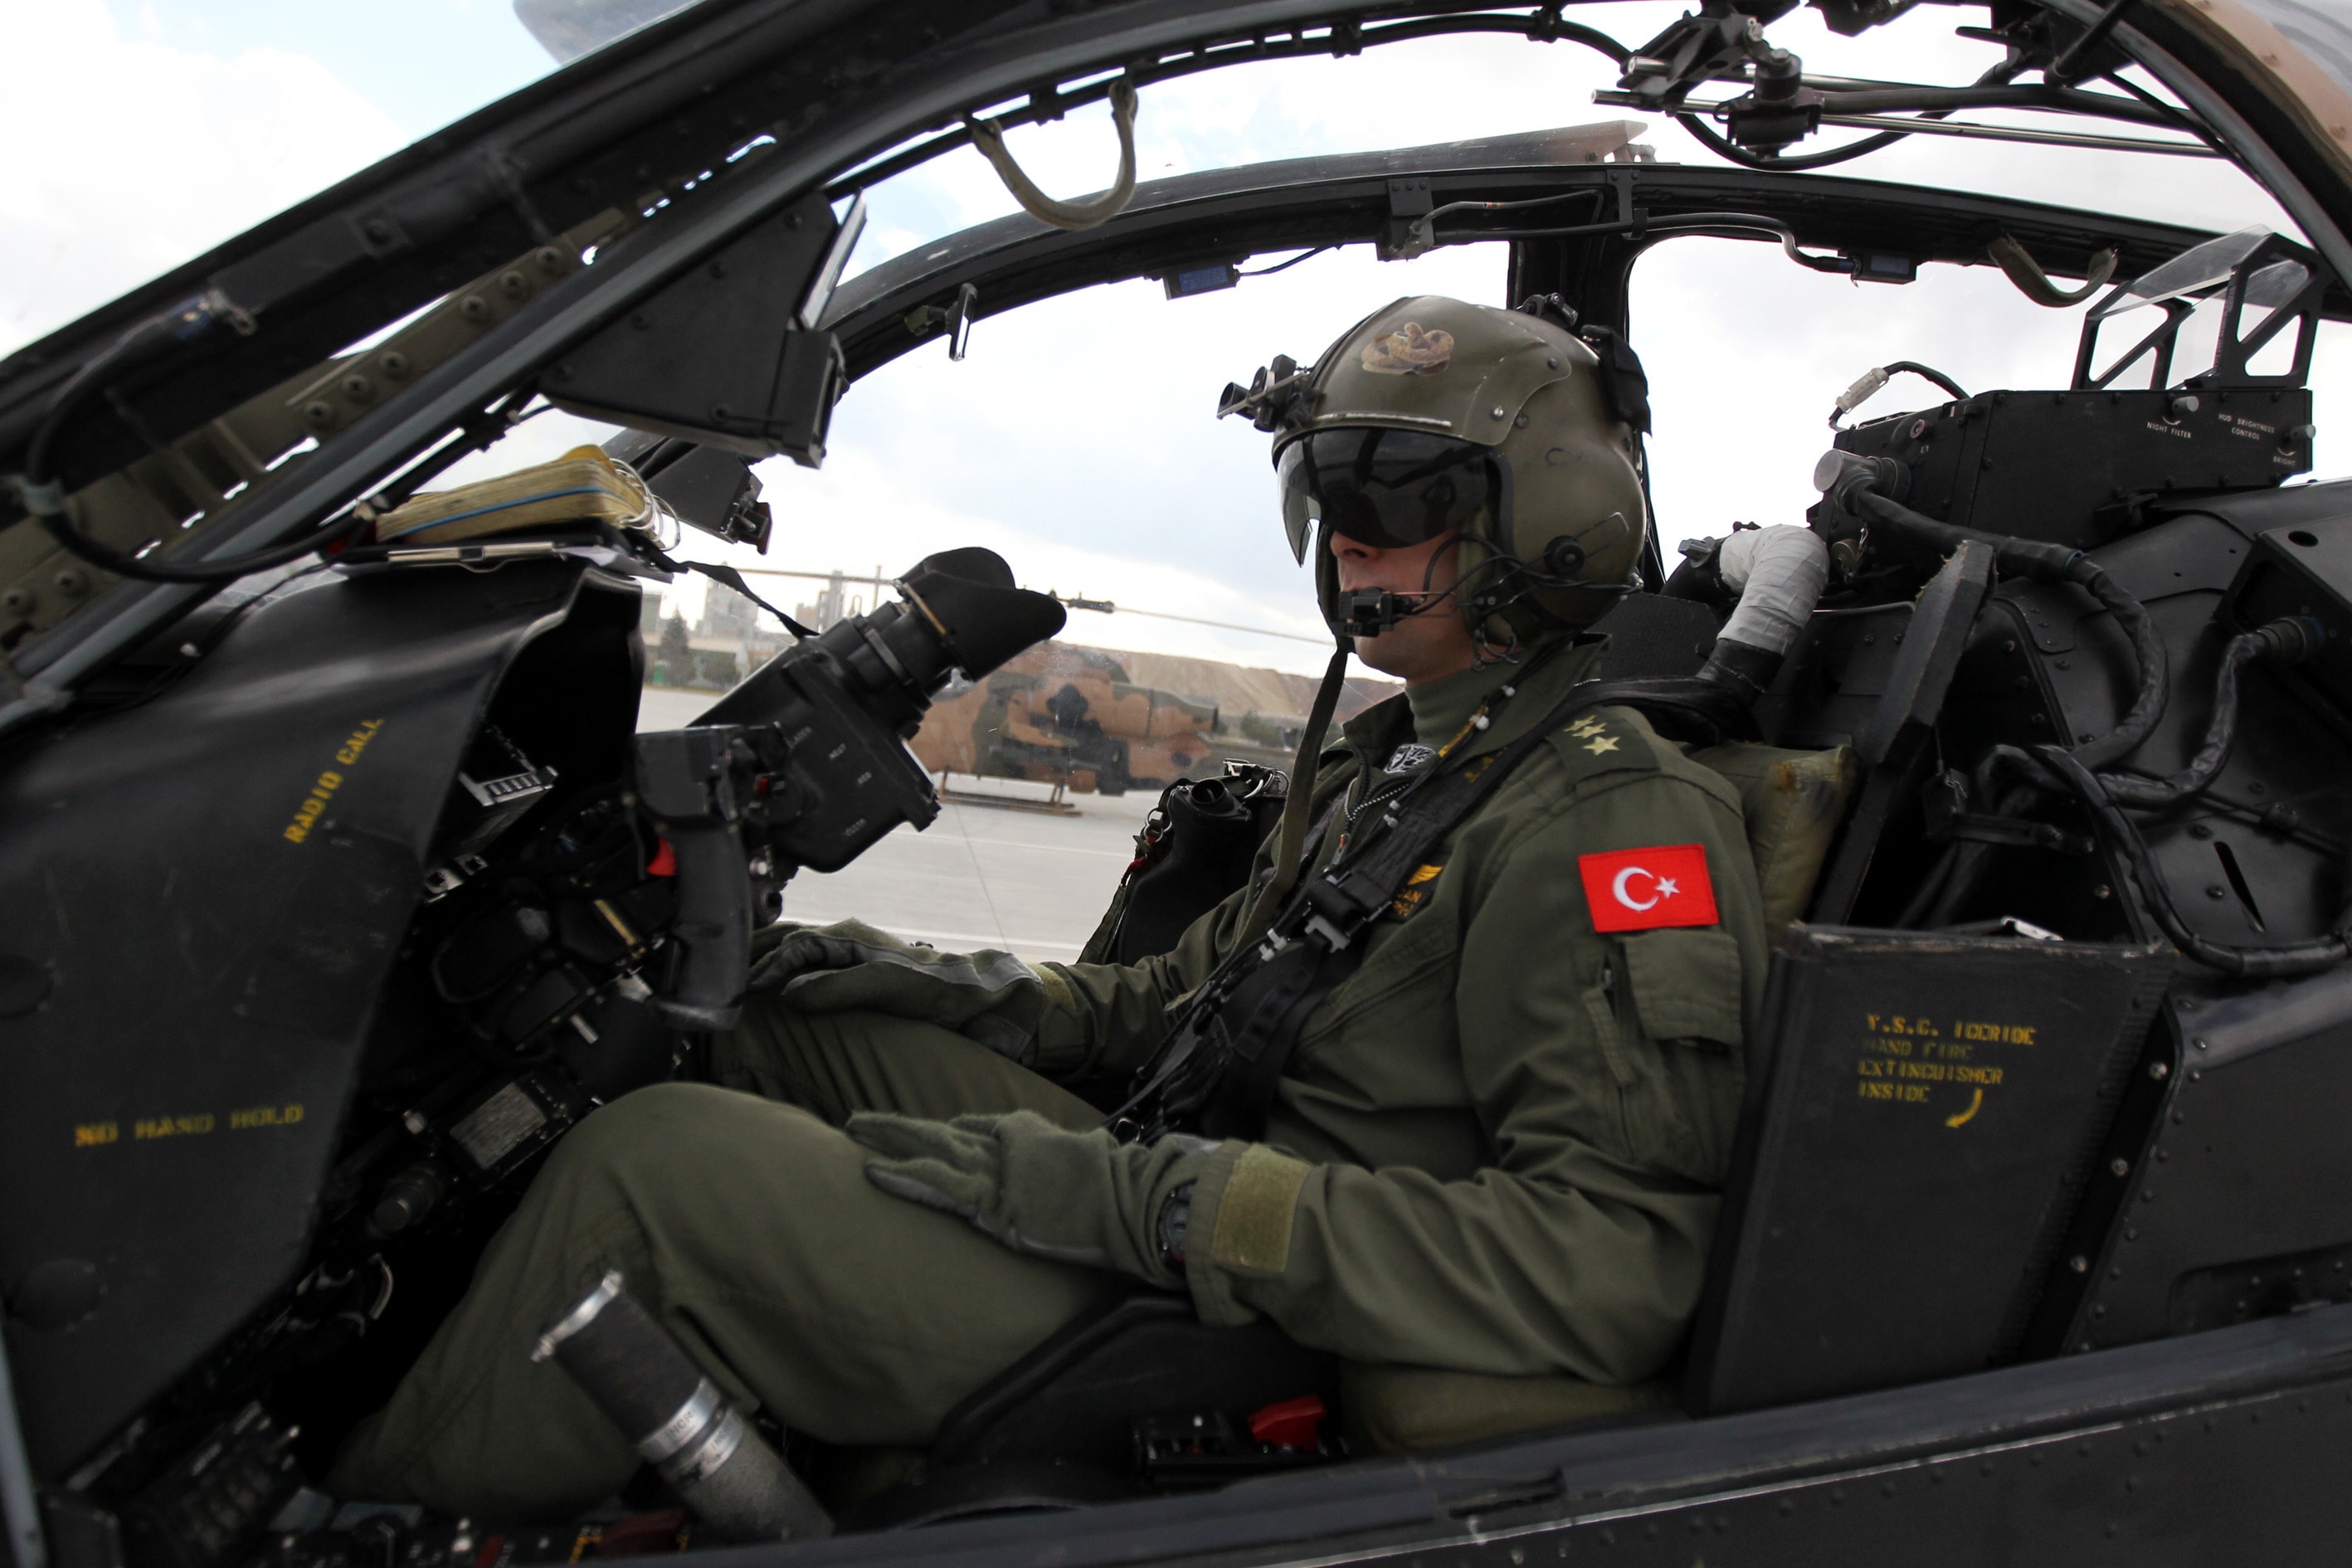 Türk Silahlı Kuvvetleri´nin terörle mücadelede en önemli vurucu gücü olan taarruz helikopteri pilotlarının da yetiştirildiği kara havacılık okul komutanlığı